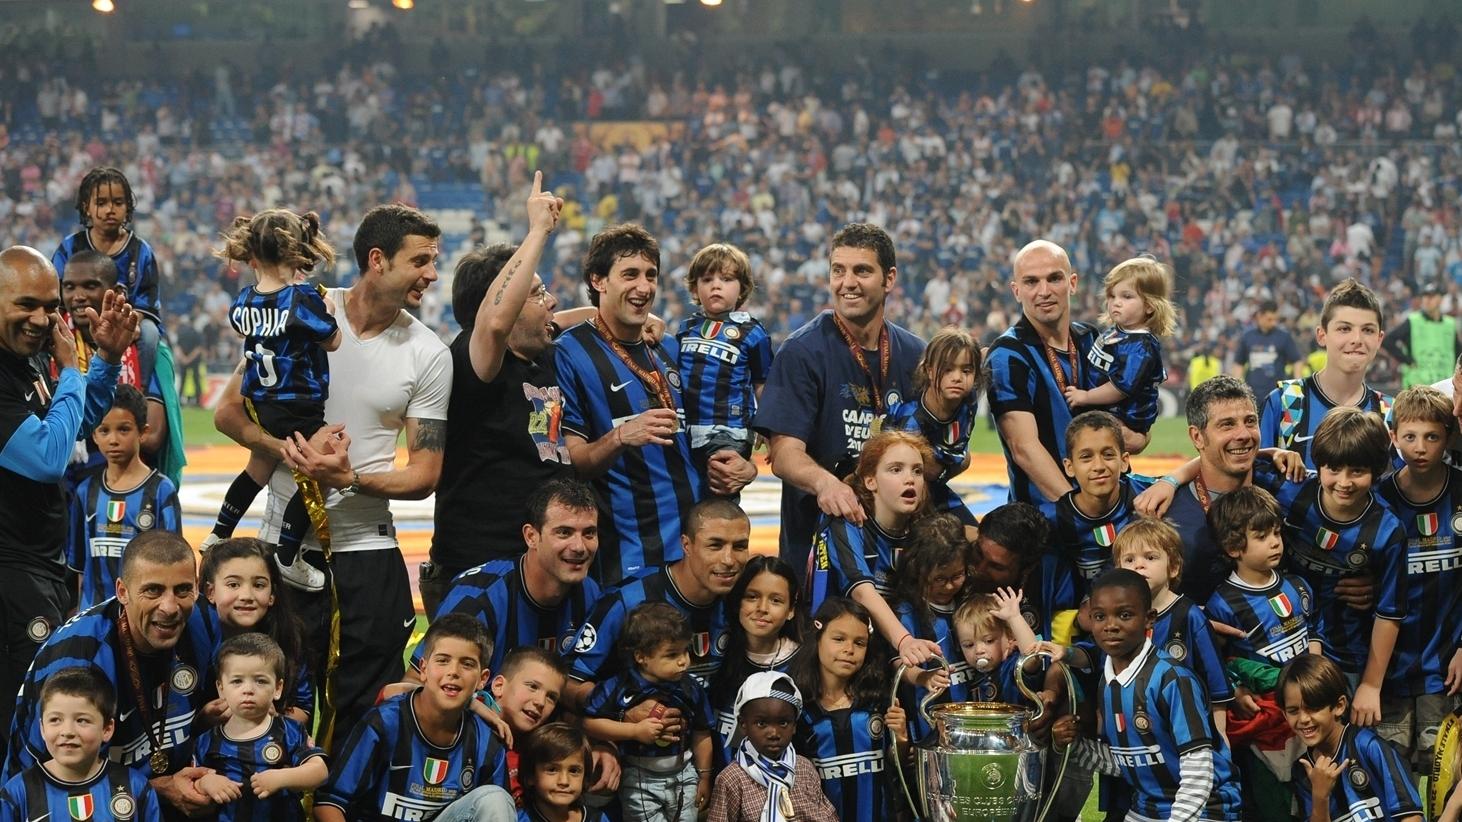 Inter Name 2010-11 UEFA Champions League Squad